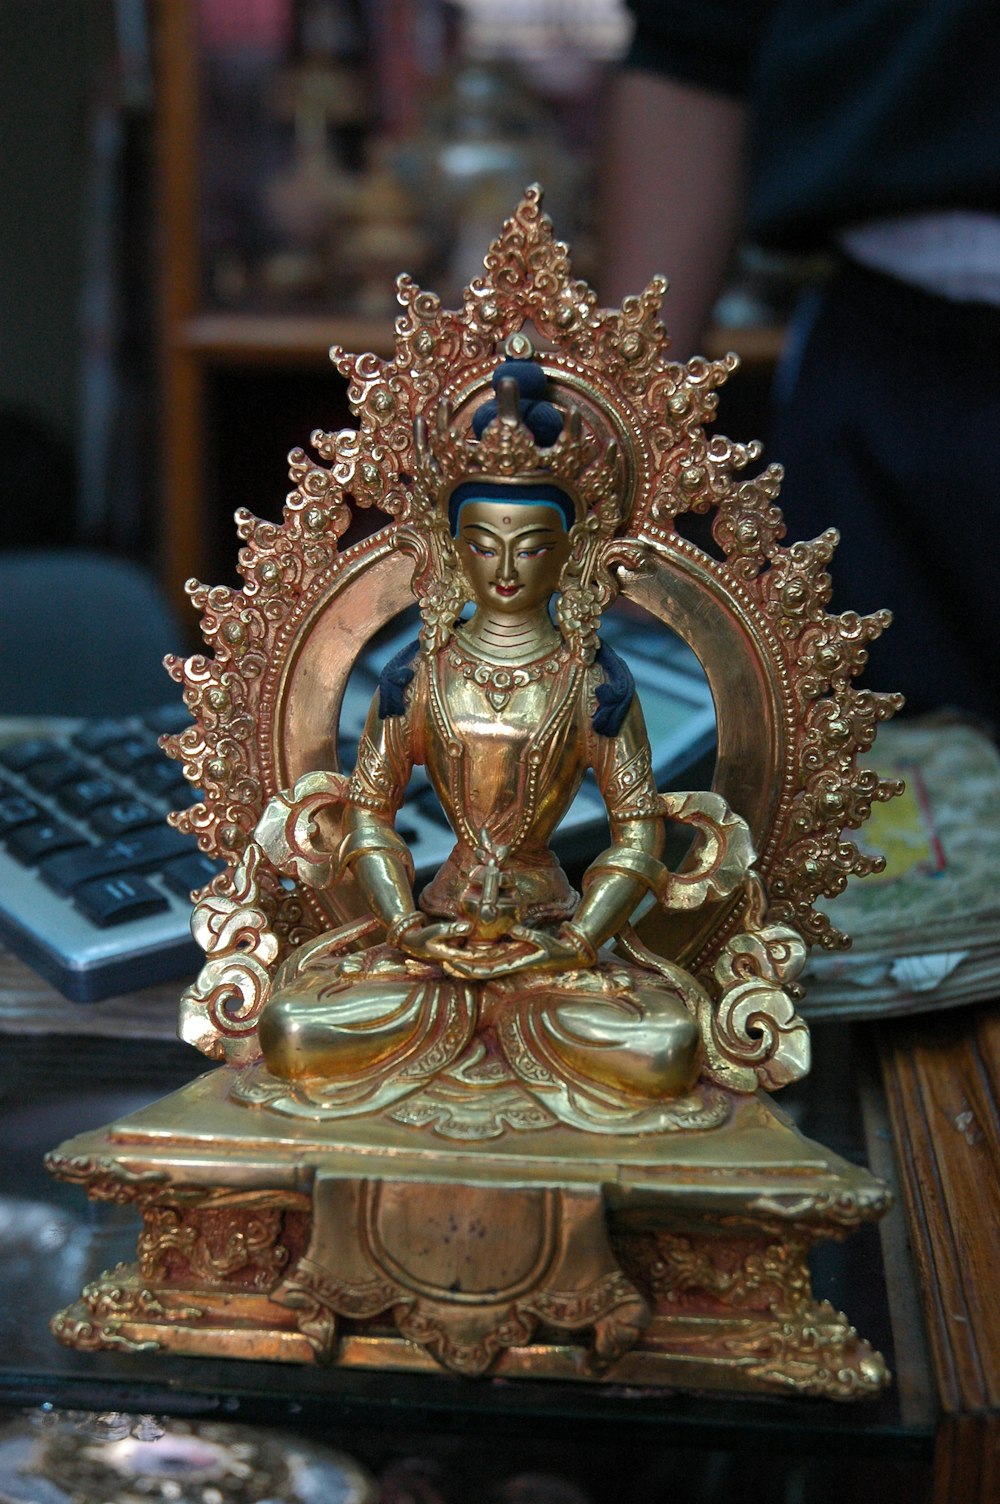 gold-colored figurine